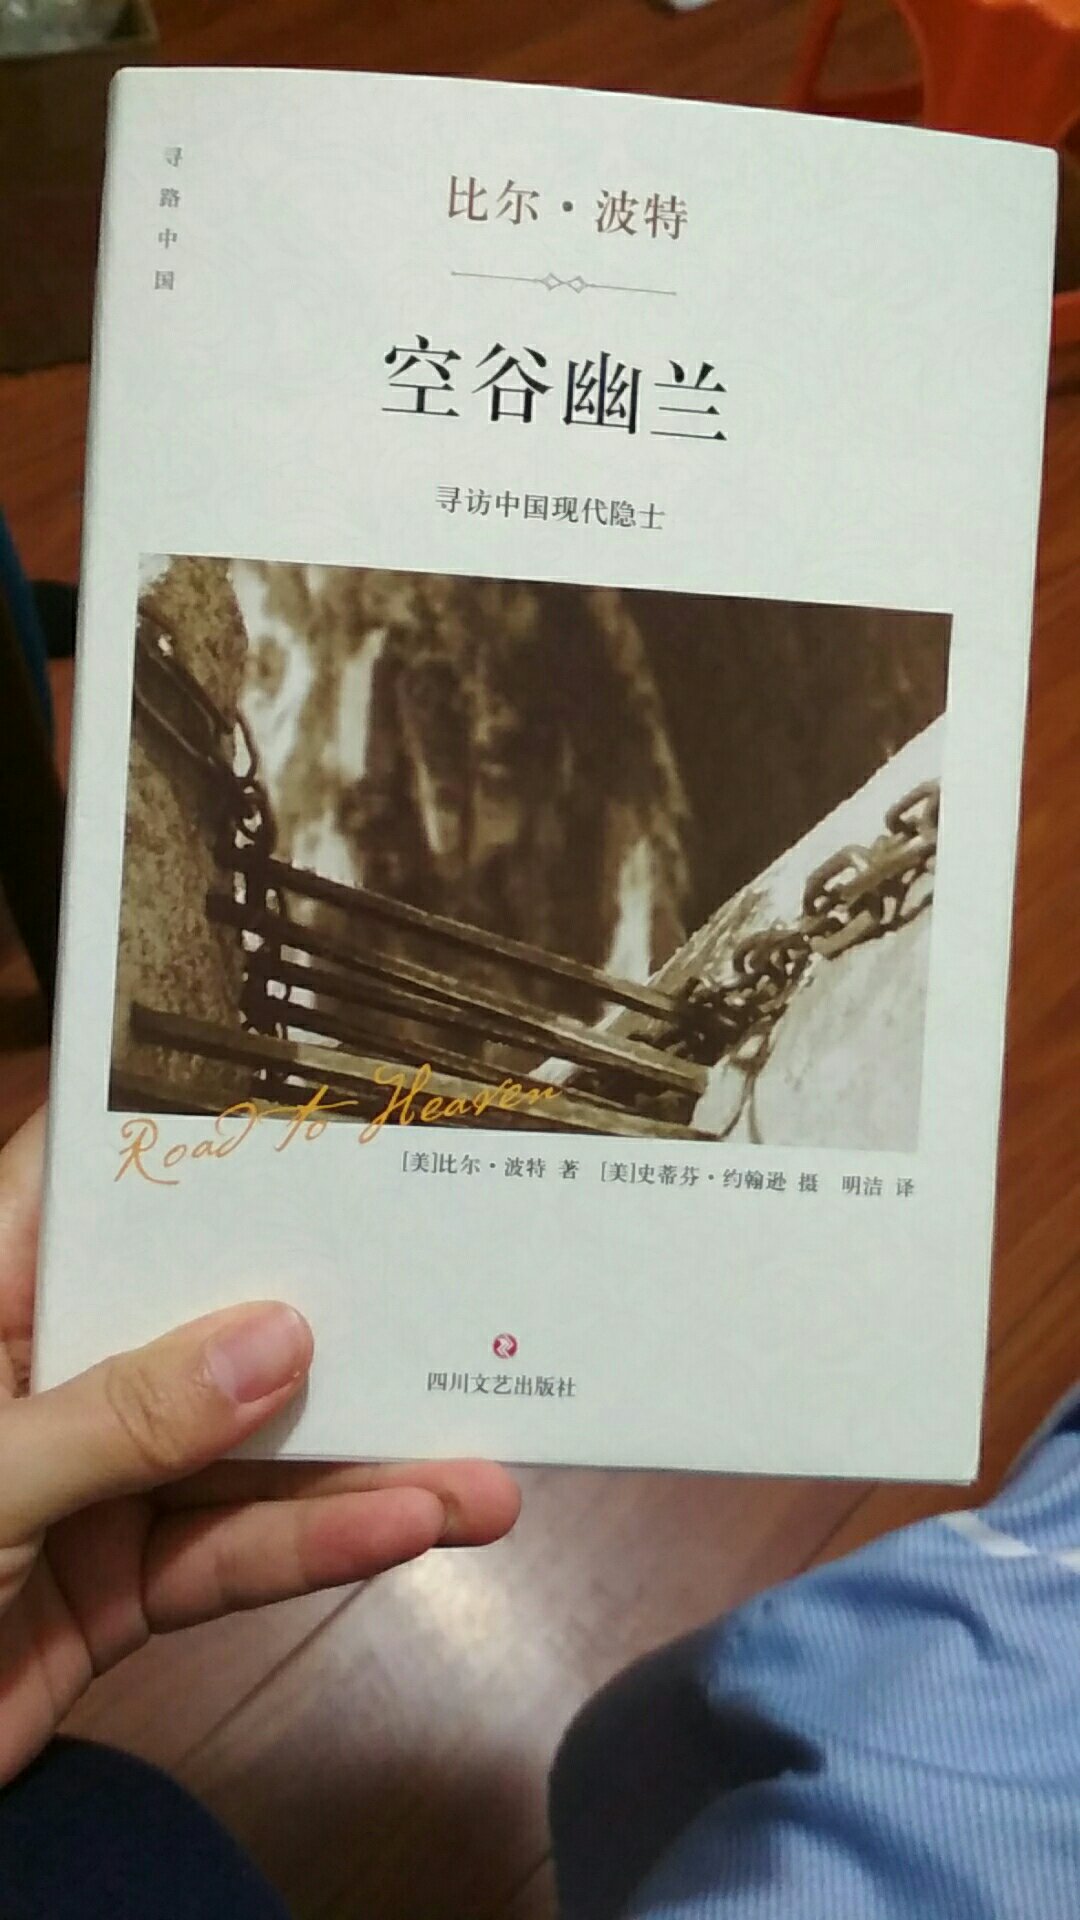 被推荐的这本书，对一个外国人探访中国隐士而发生的事情充满了好奇，但是打开书看的时候觉得有点失望？没有自己想象的有趣，翻译的句子感觉文笔一般?